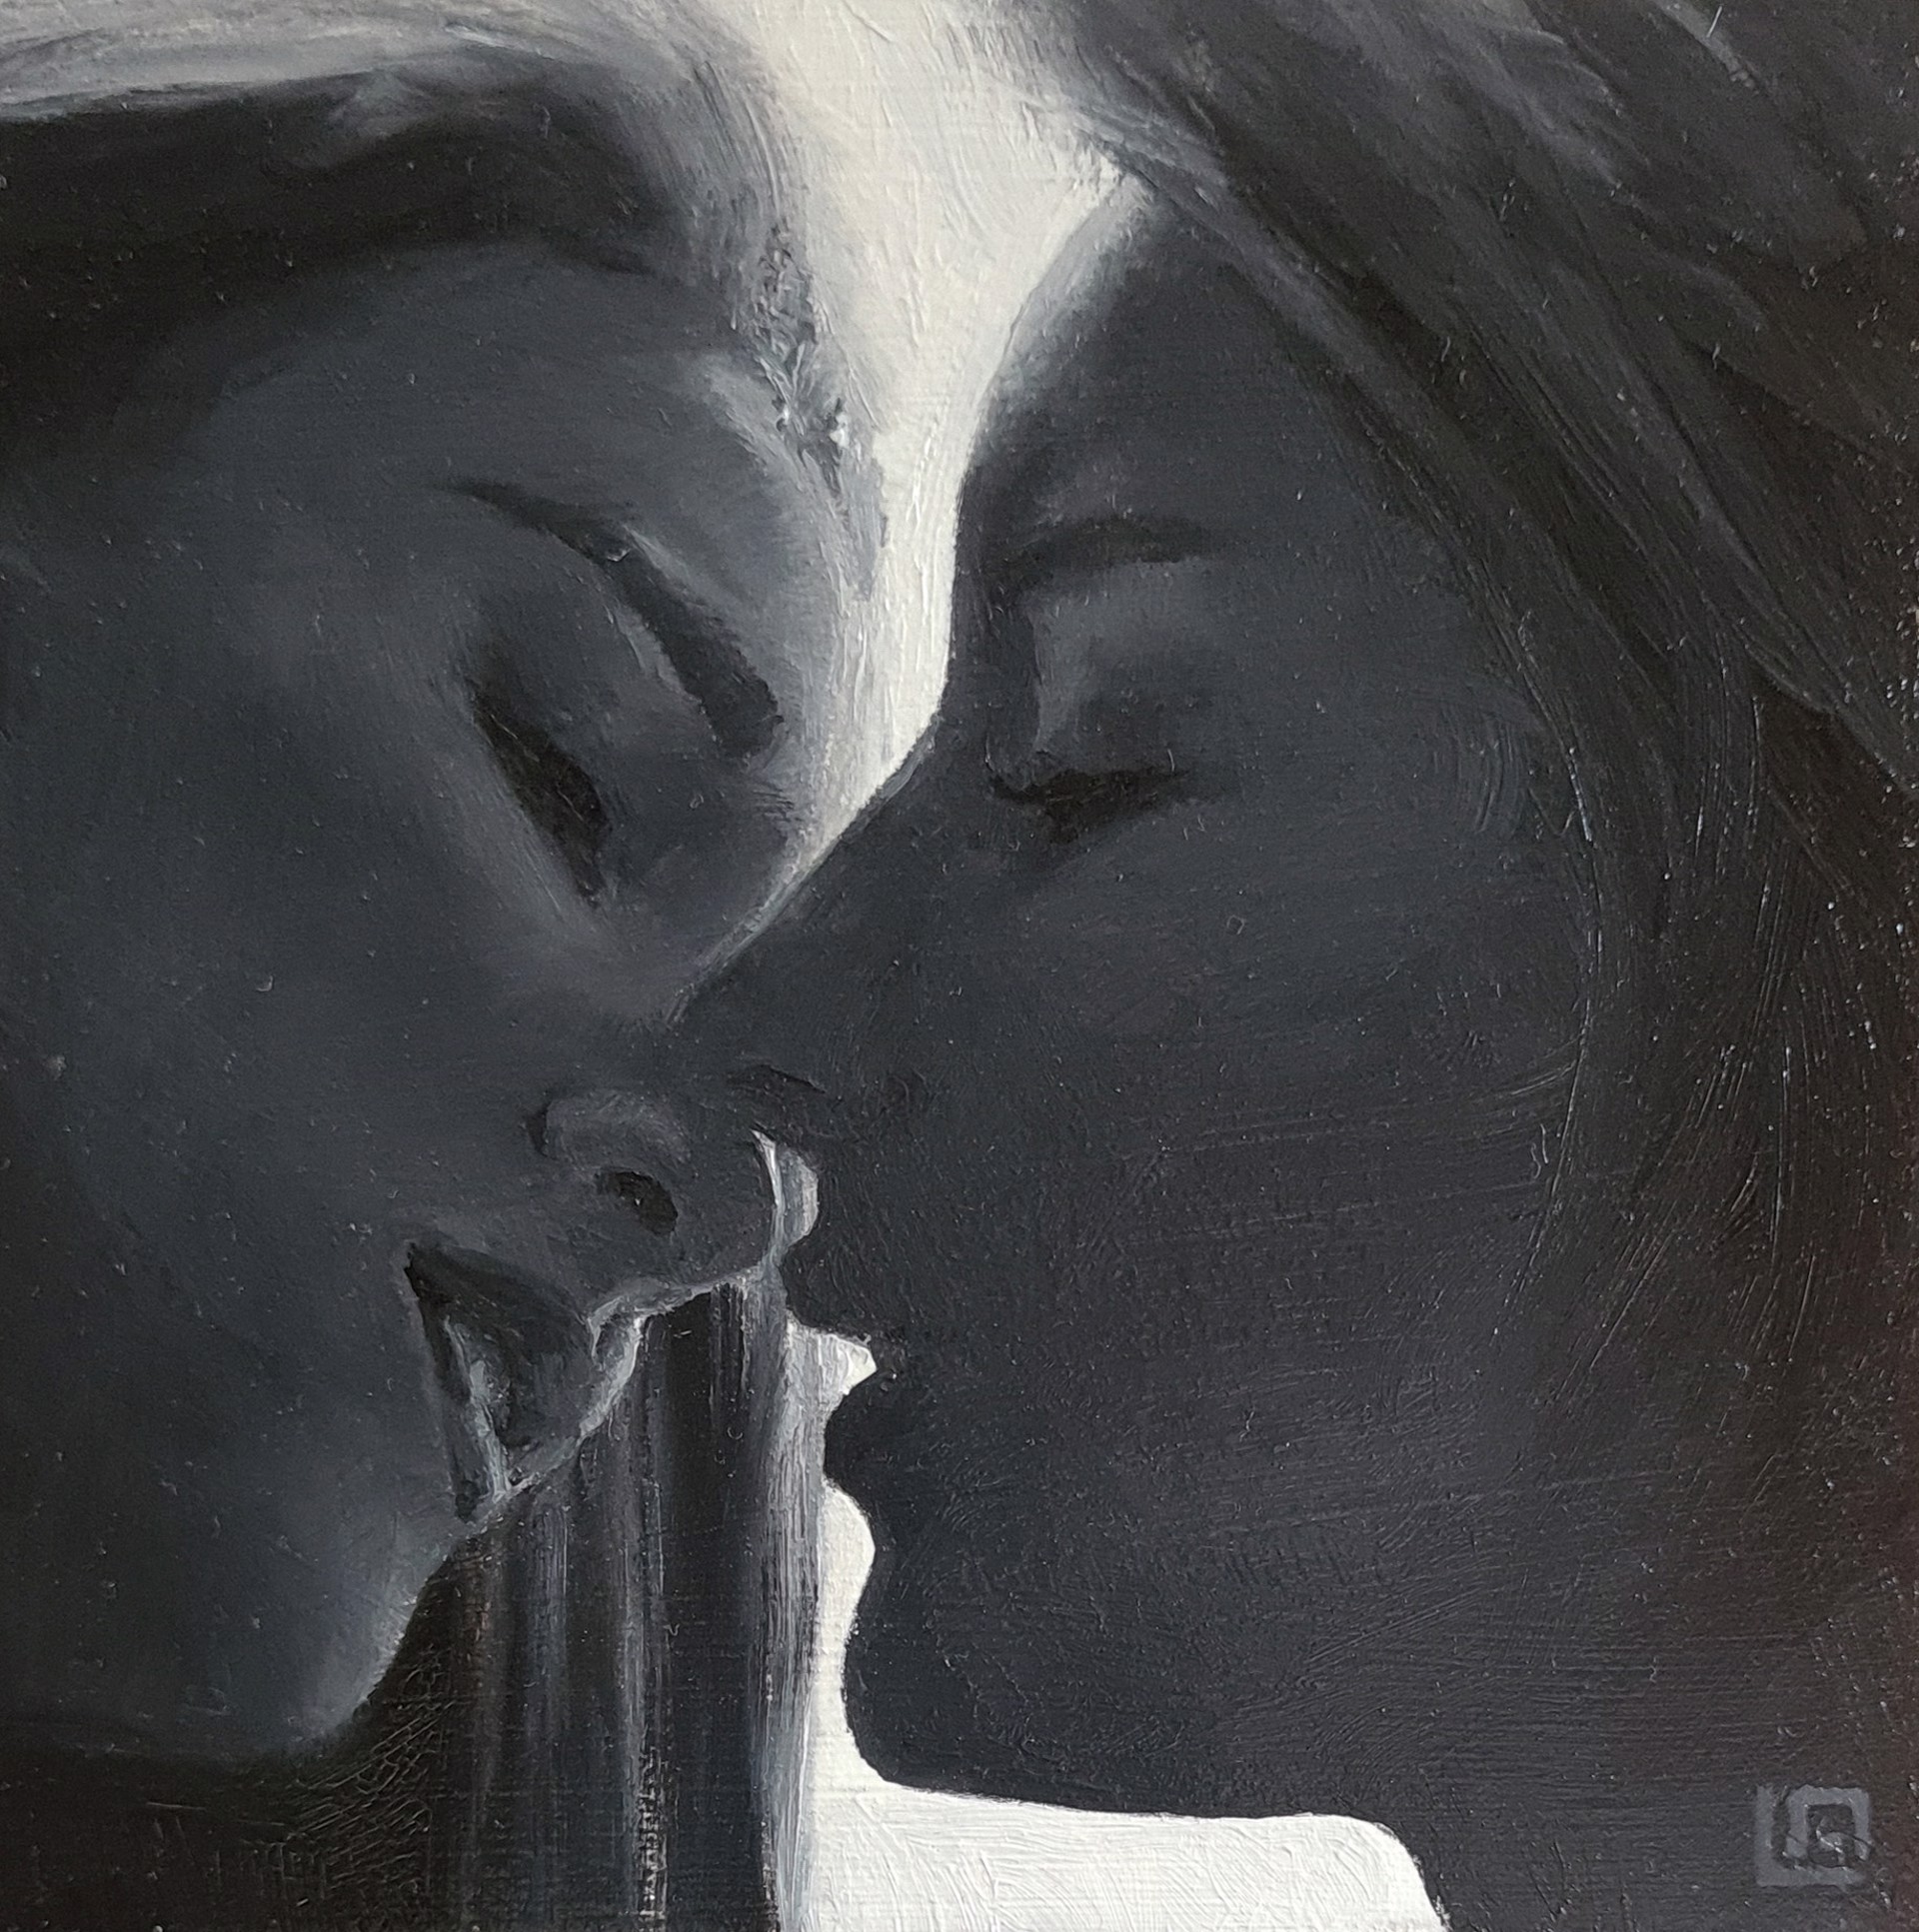 The Kiss #7 by Linda Adair